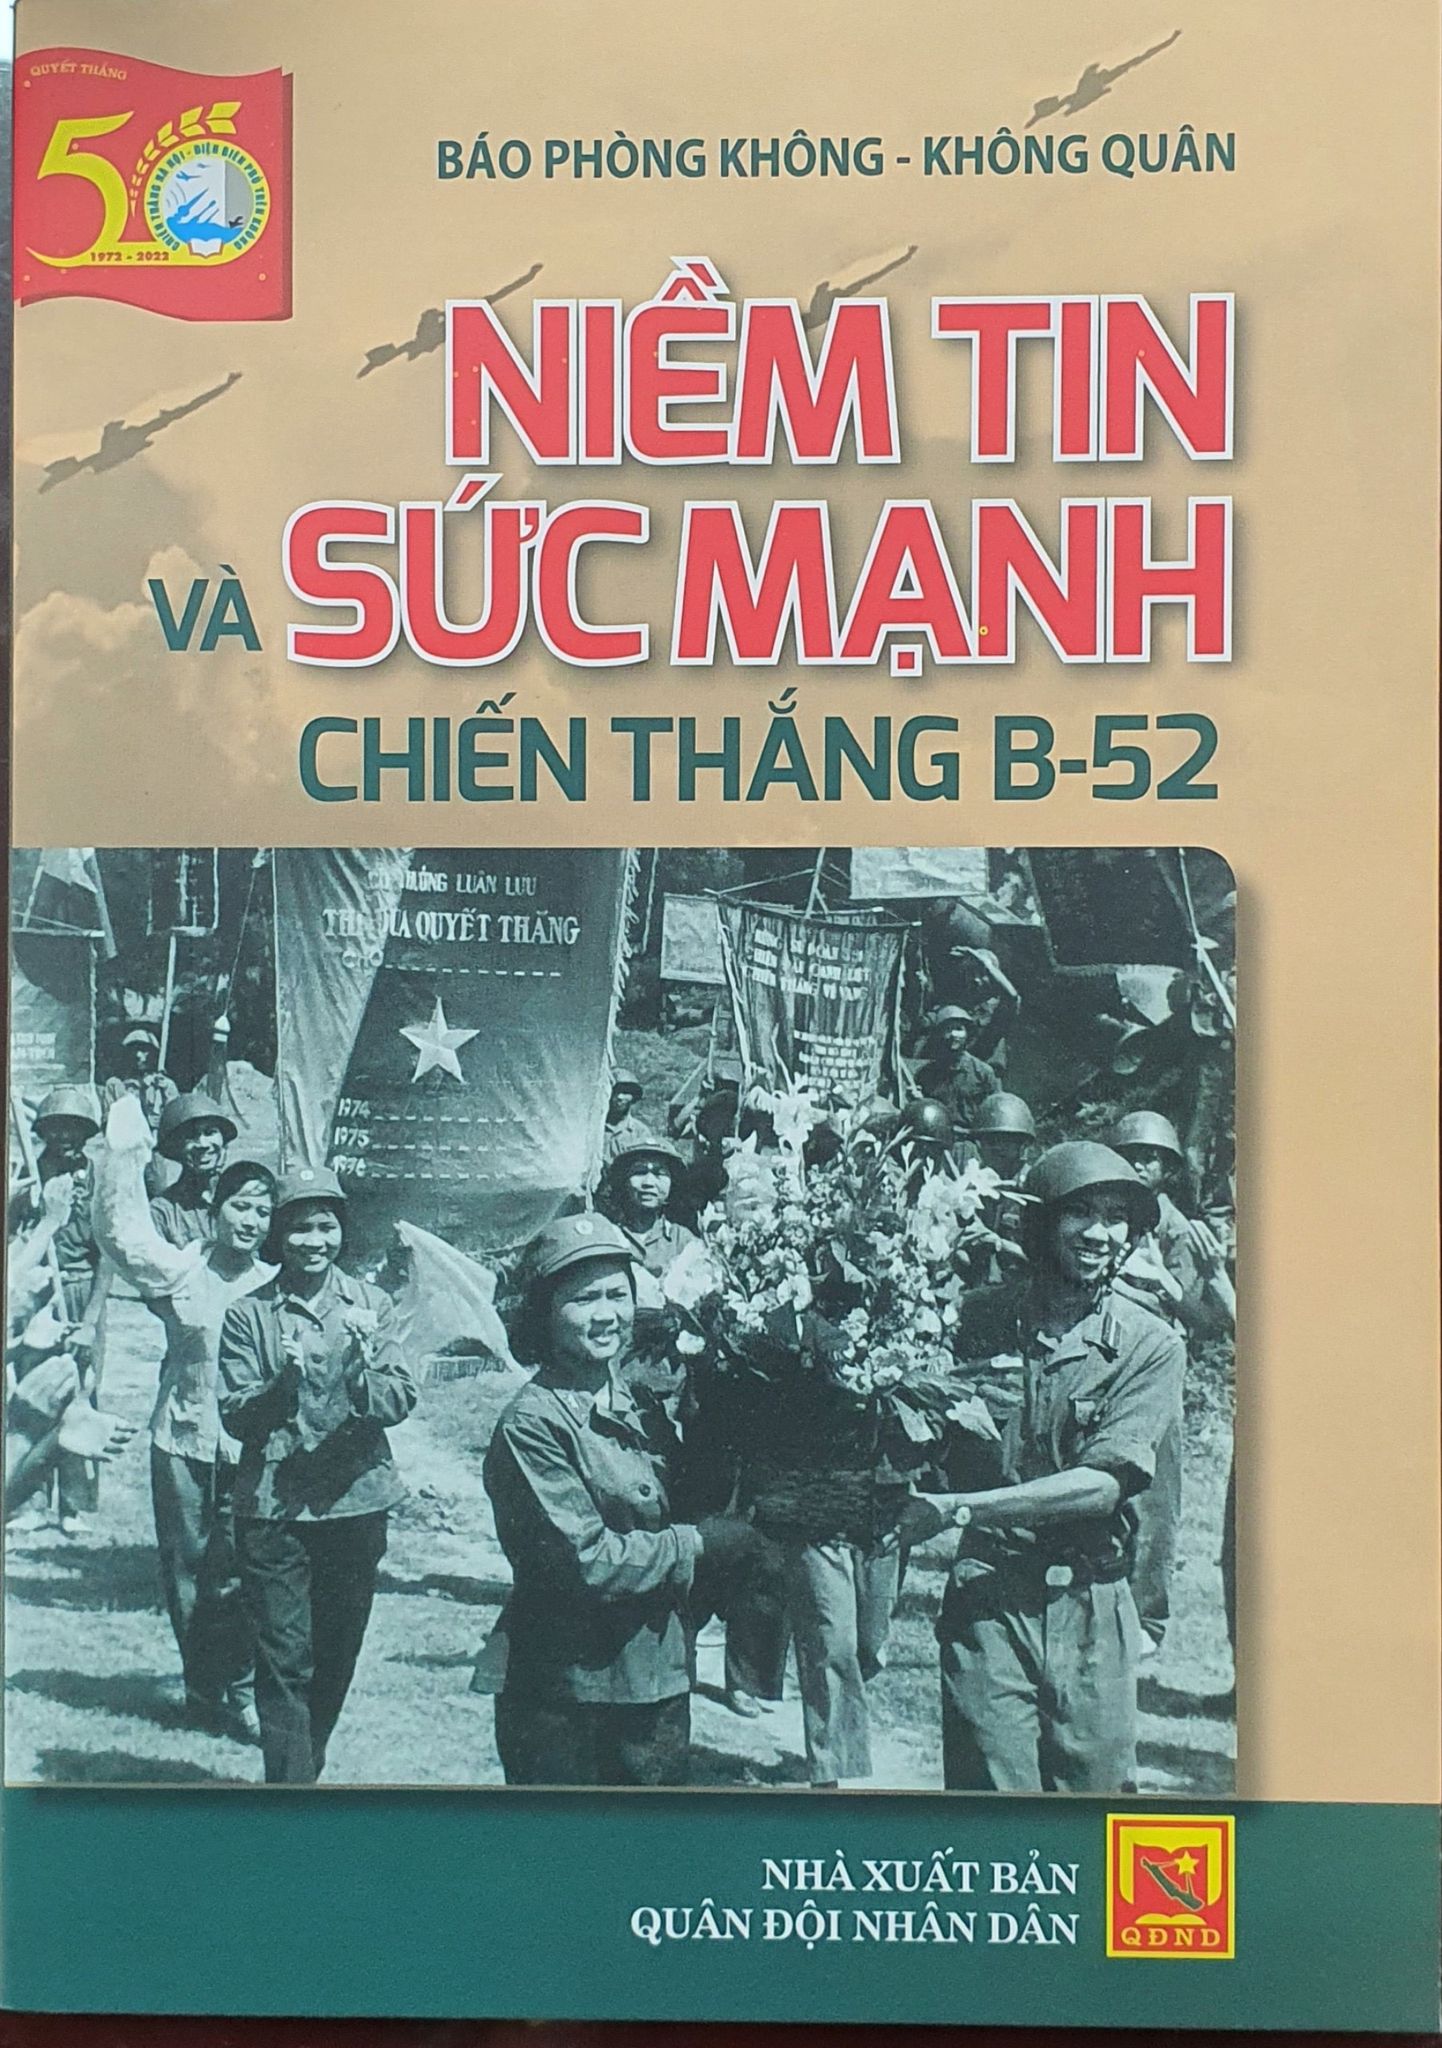 Ra mắt bộ sách kỷ niệm 50 năm Chiến thắng “Hà Nội - Điện Biên Phủ trên không” - Ảnh 2.